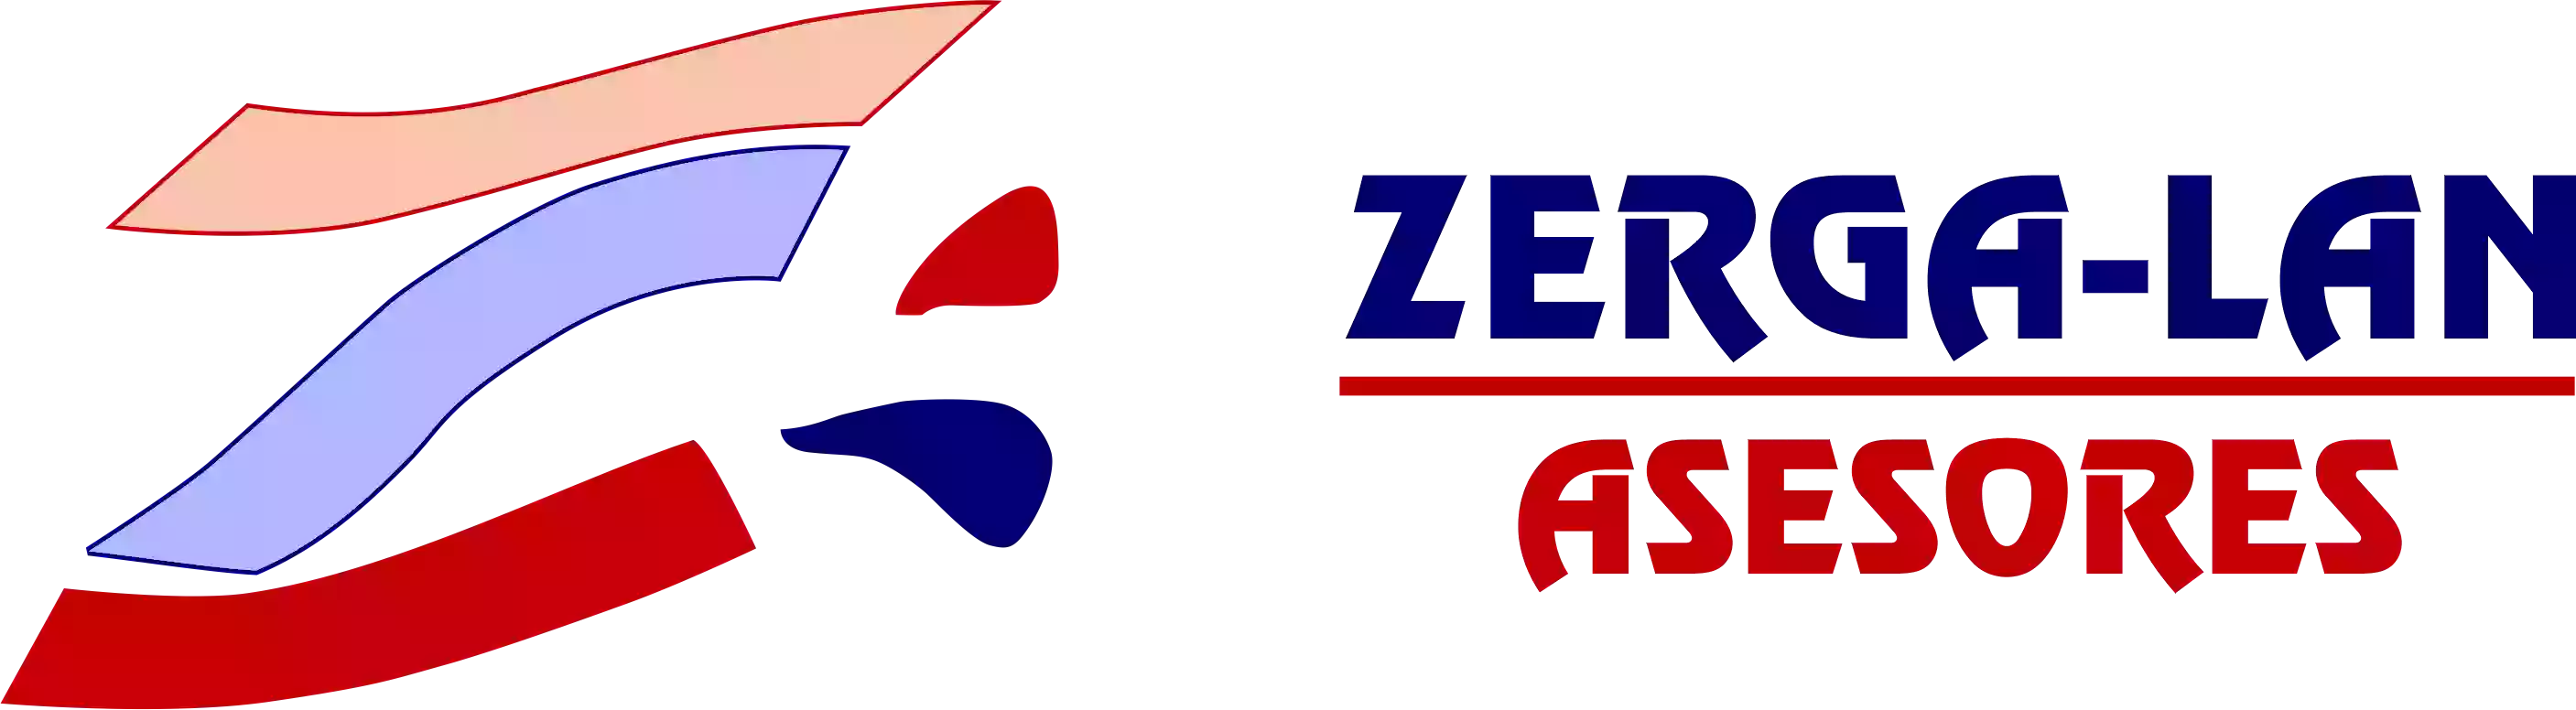 Asesoría Zerga-lan 2000 SL - Laboral, Fiscal, Contable, Declaración de la renta